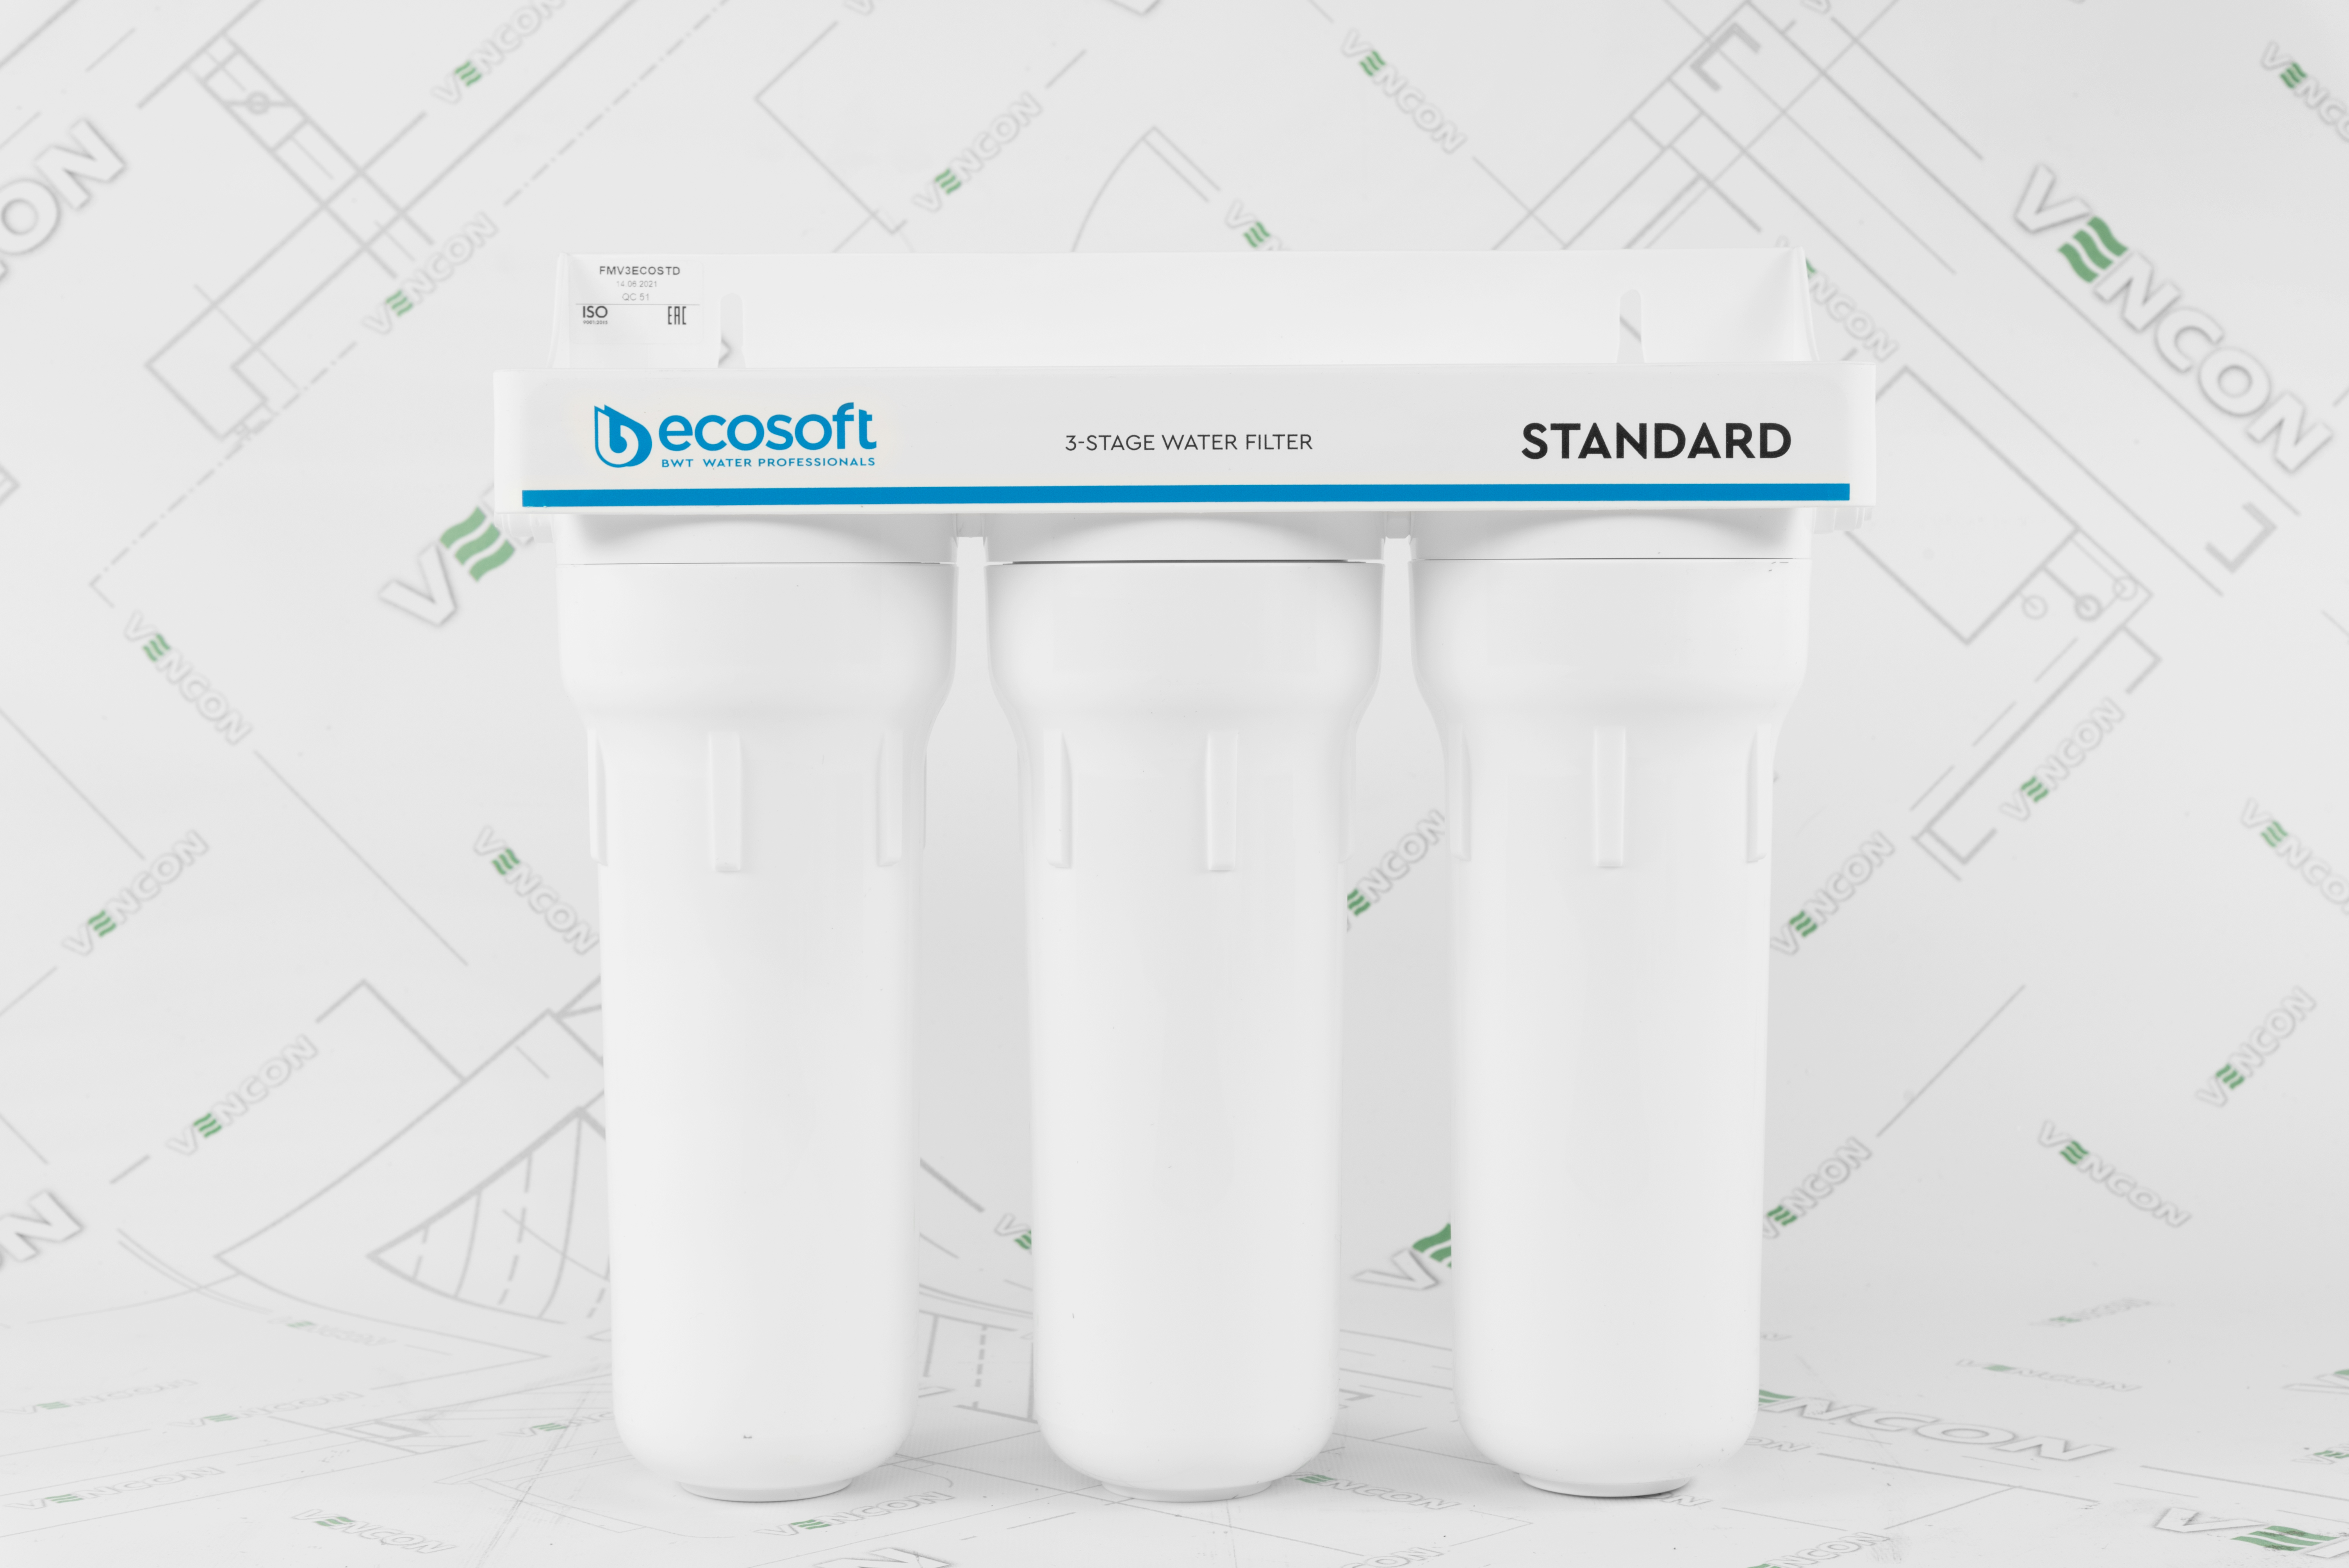 Фильтр для воды Ecosoft Standard FMV3ECOSTD цена 2018.00 грн - фотография 2